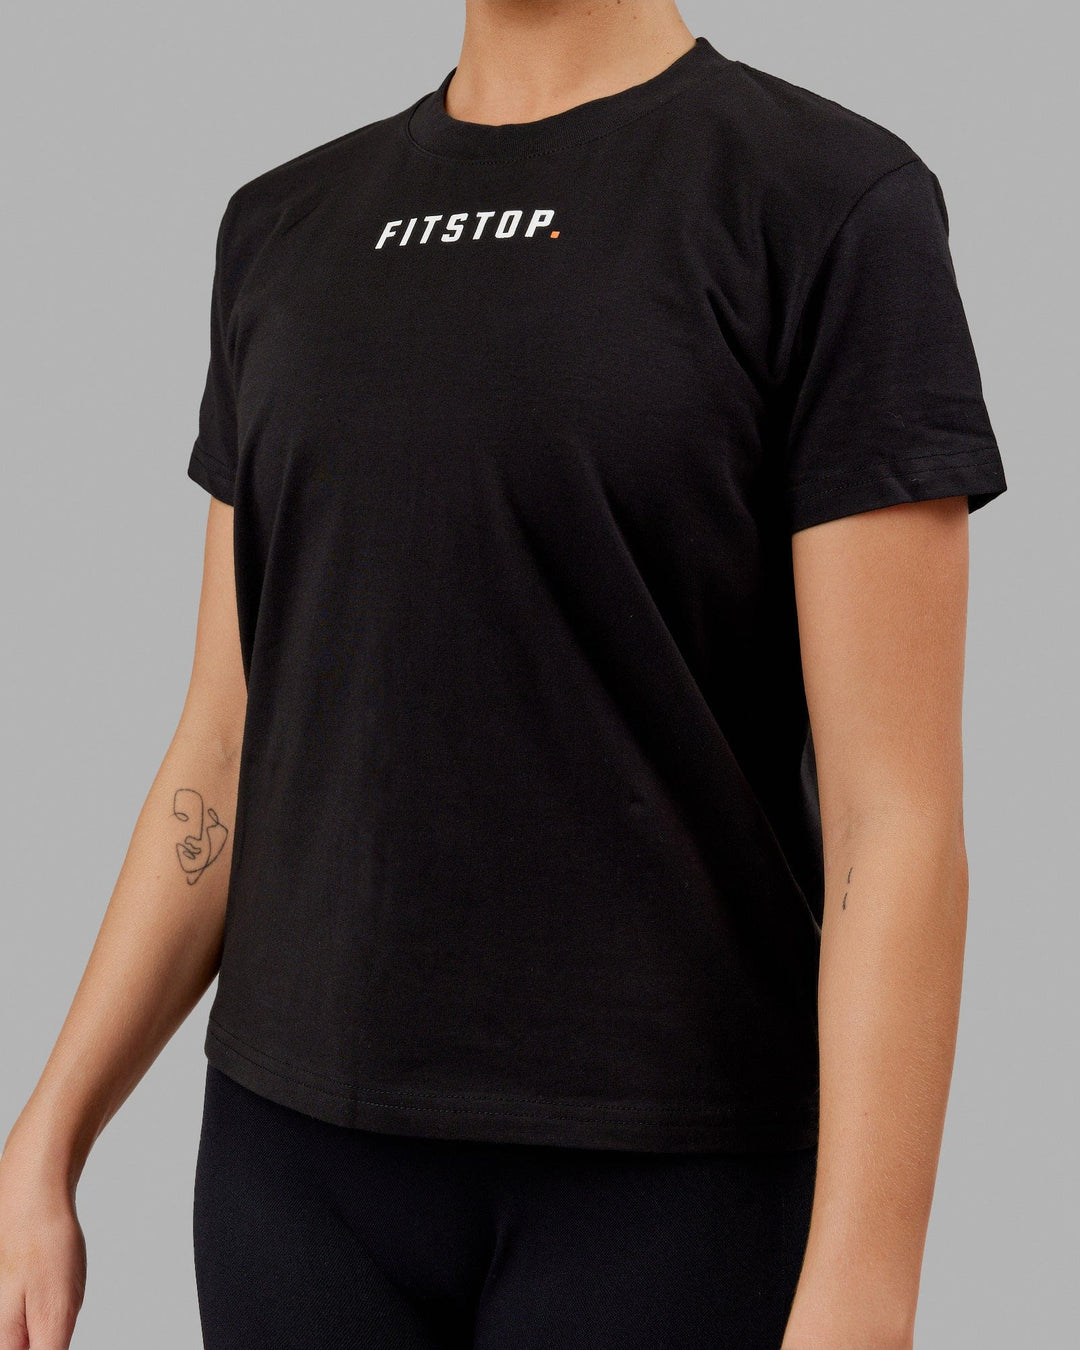 Woman wearing Fitstop Fast Tee - Black